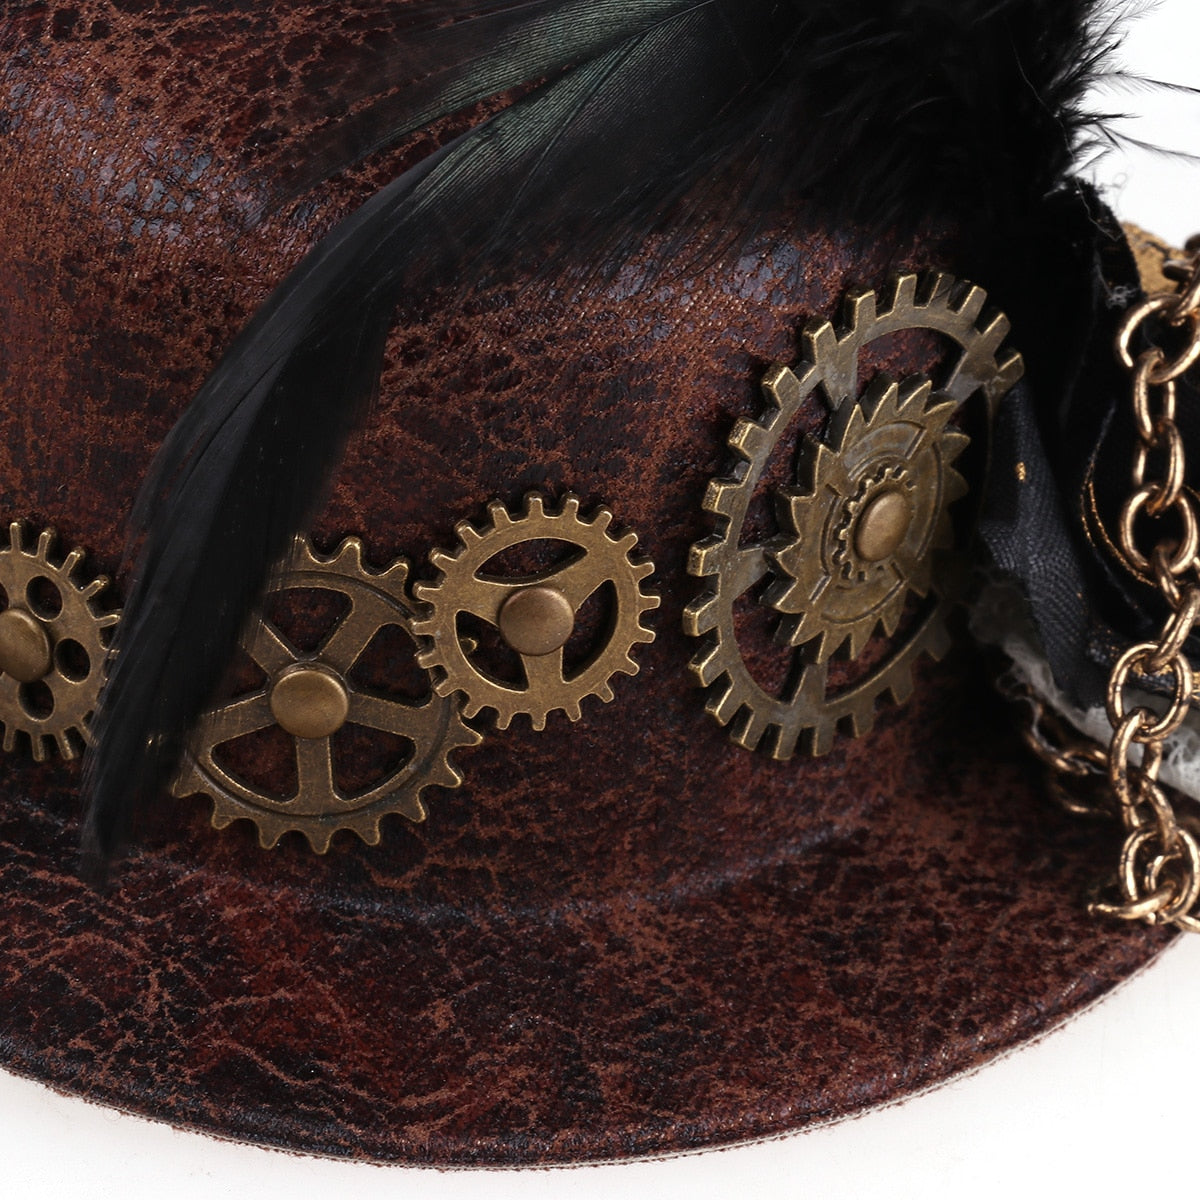 Steampunk Mini Top Hat Hair Clip (Brown One Size) - Go Steampunk